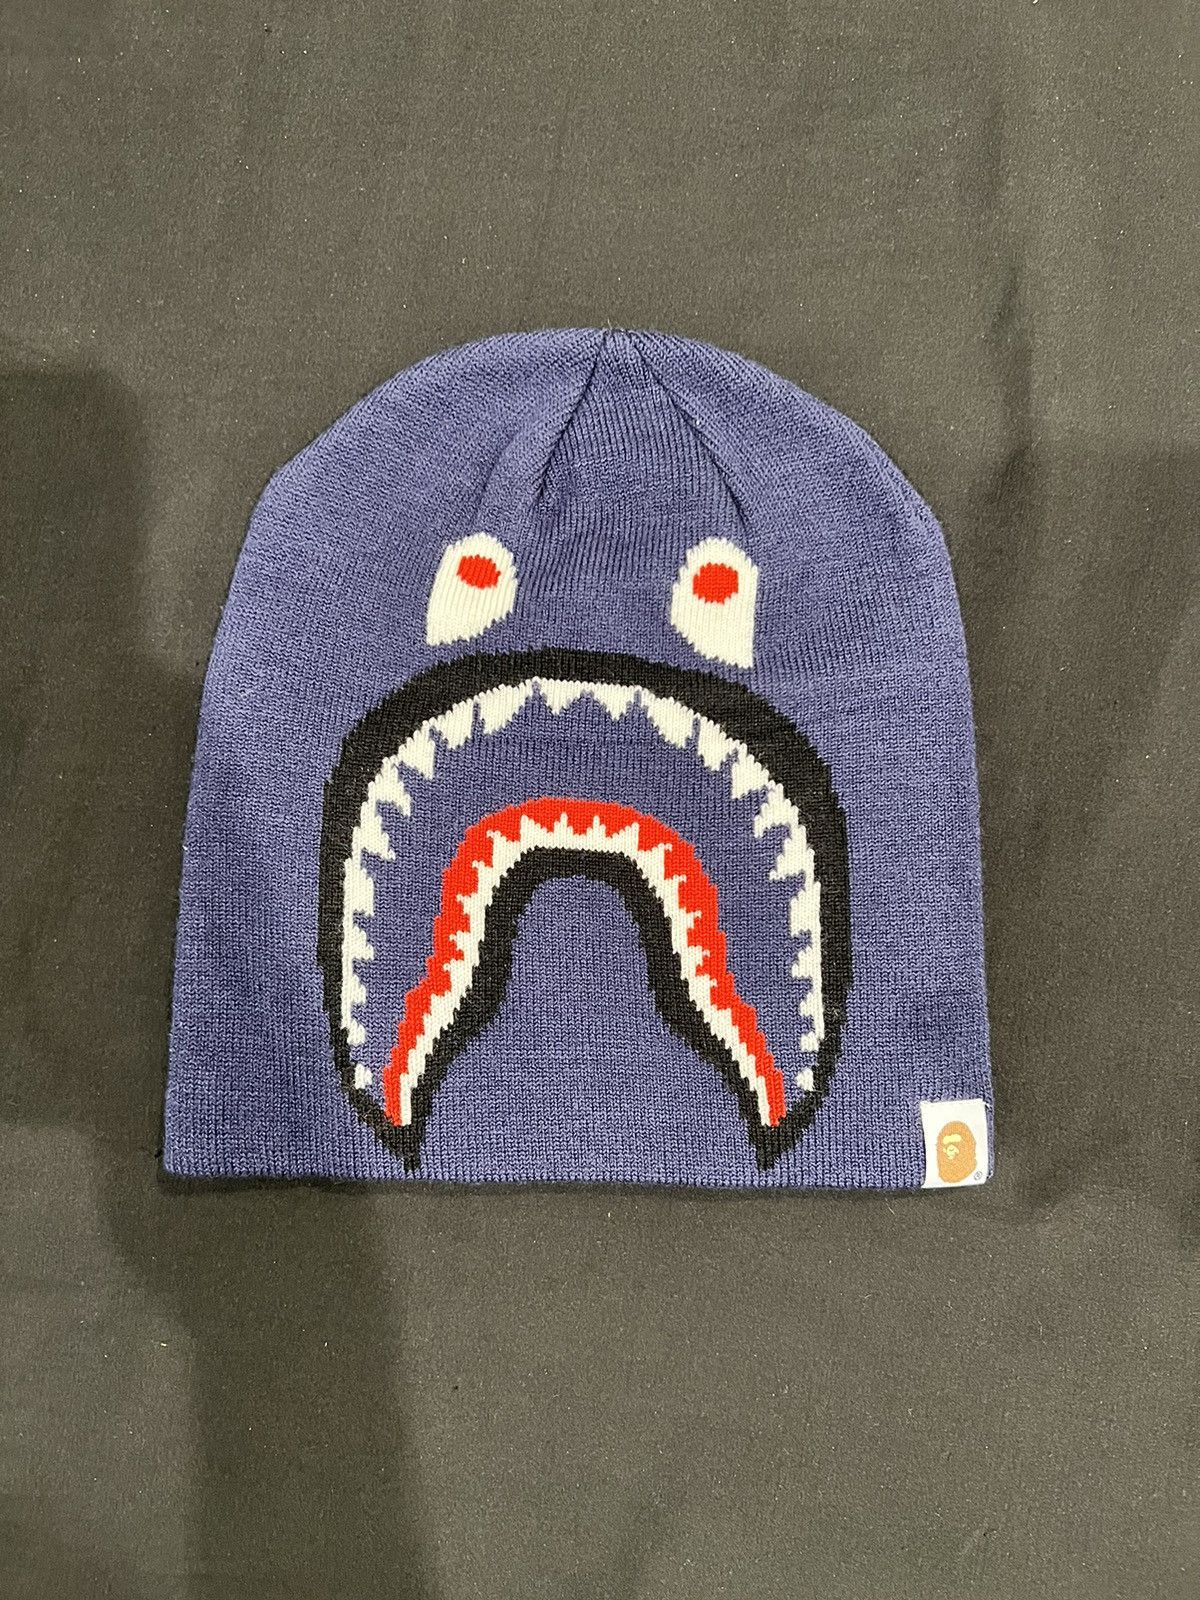 Bape 2nd Shark Knit Cap | Grailed